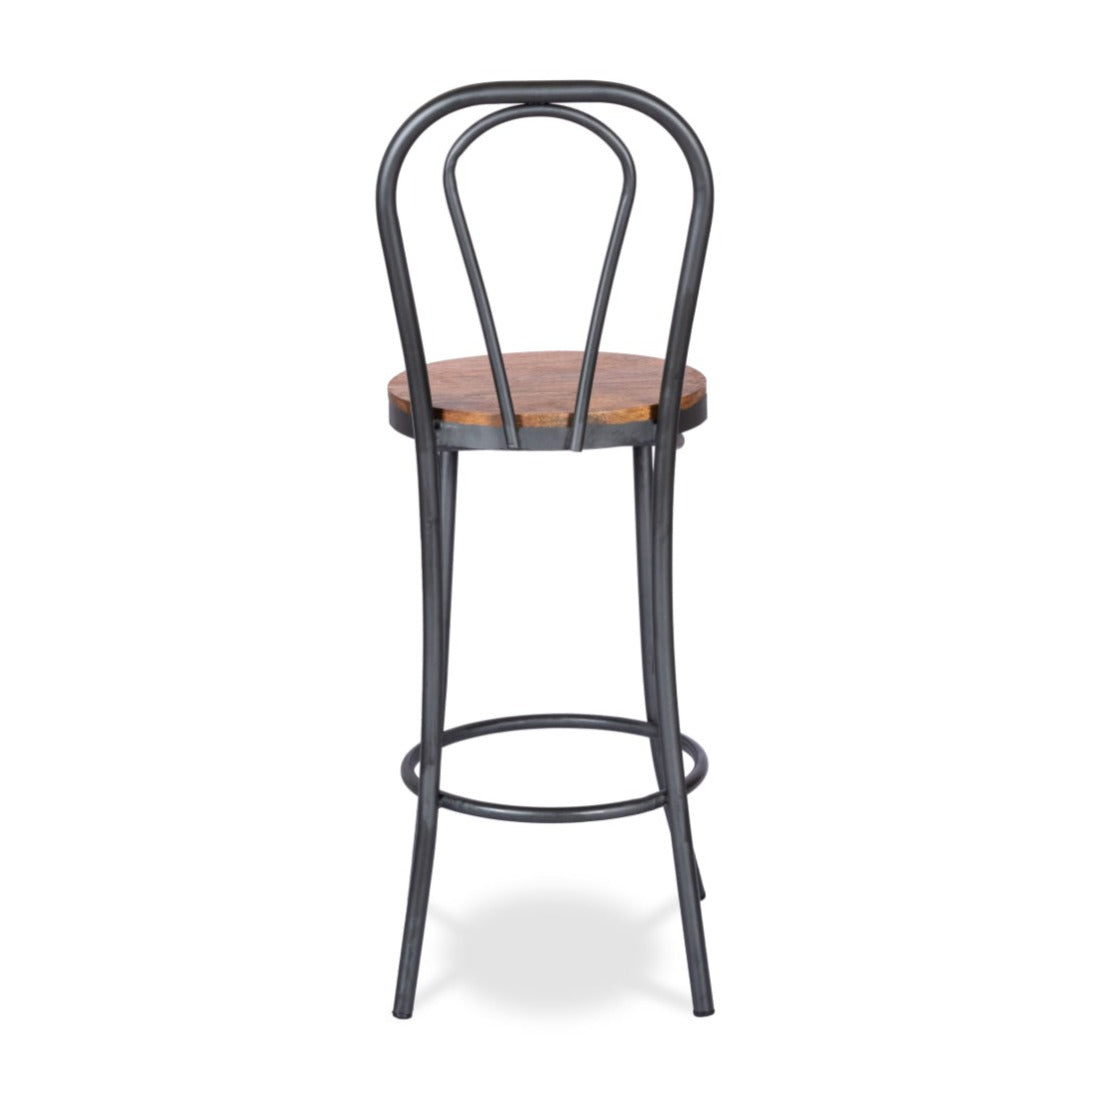 French Café Bar chair